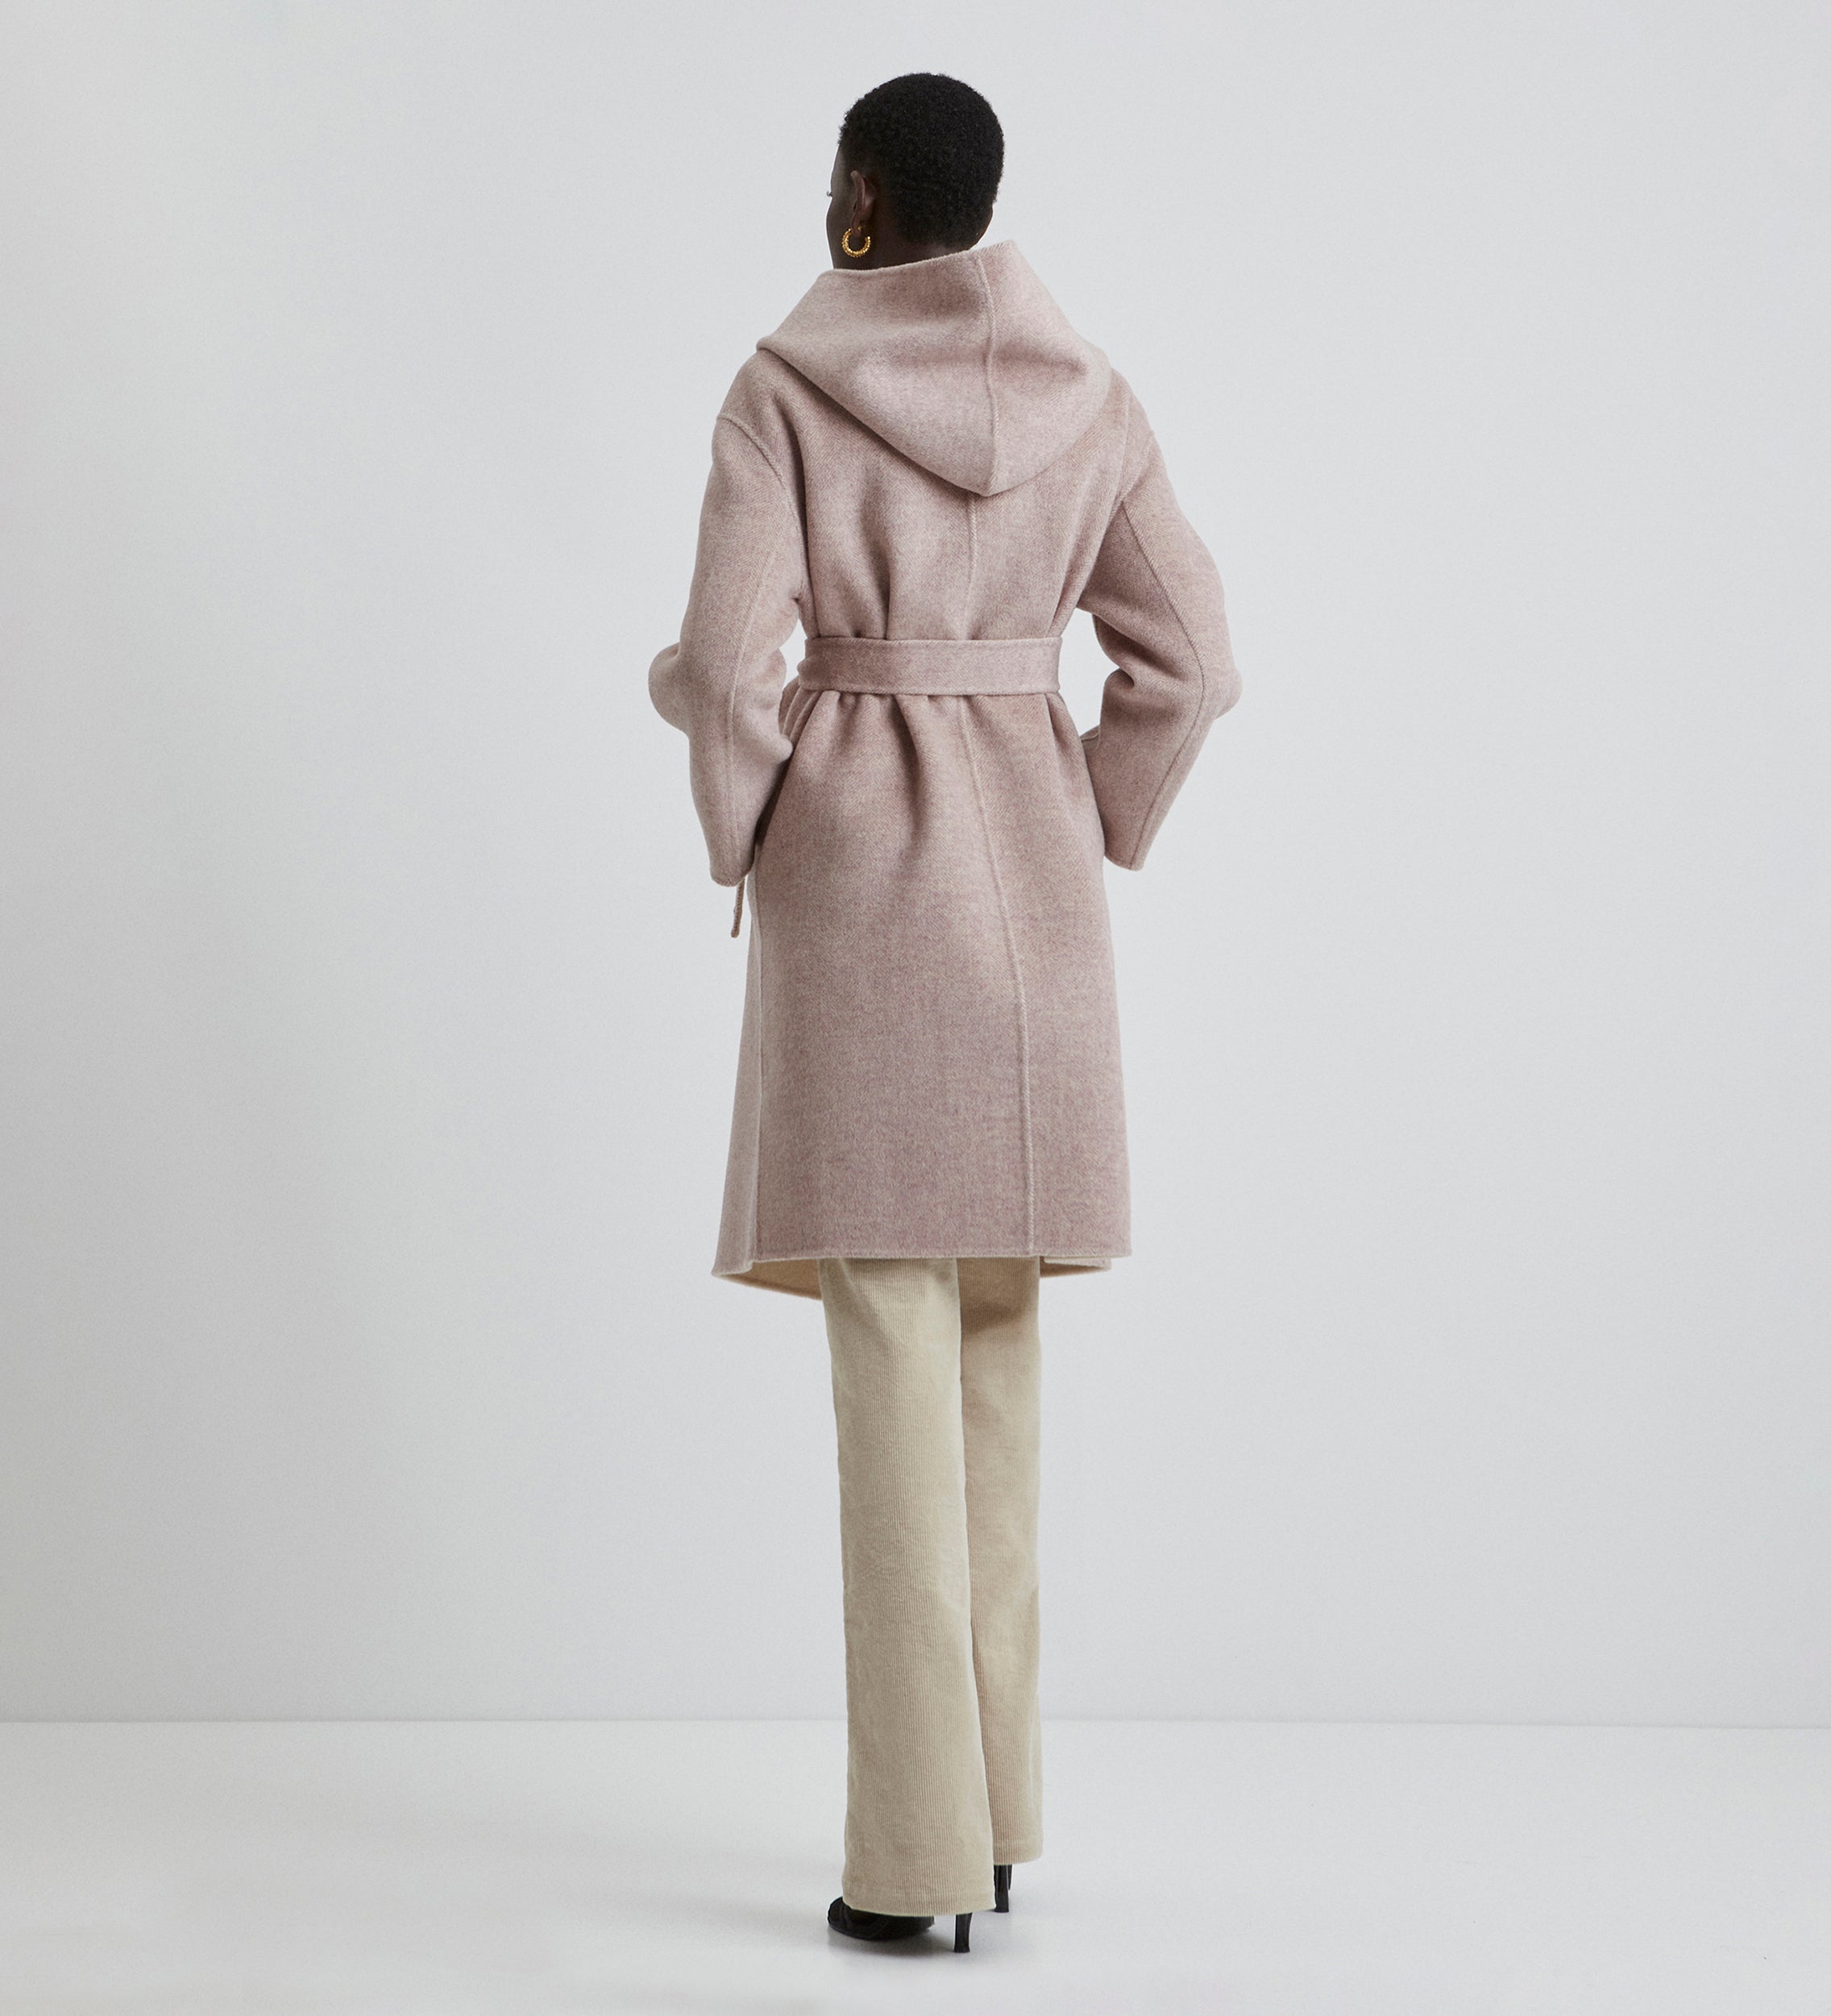 Fantasy hooded coat